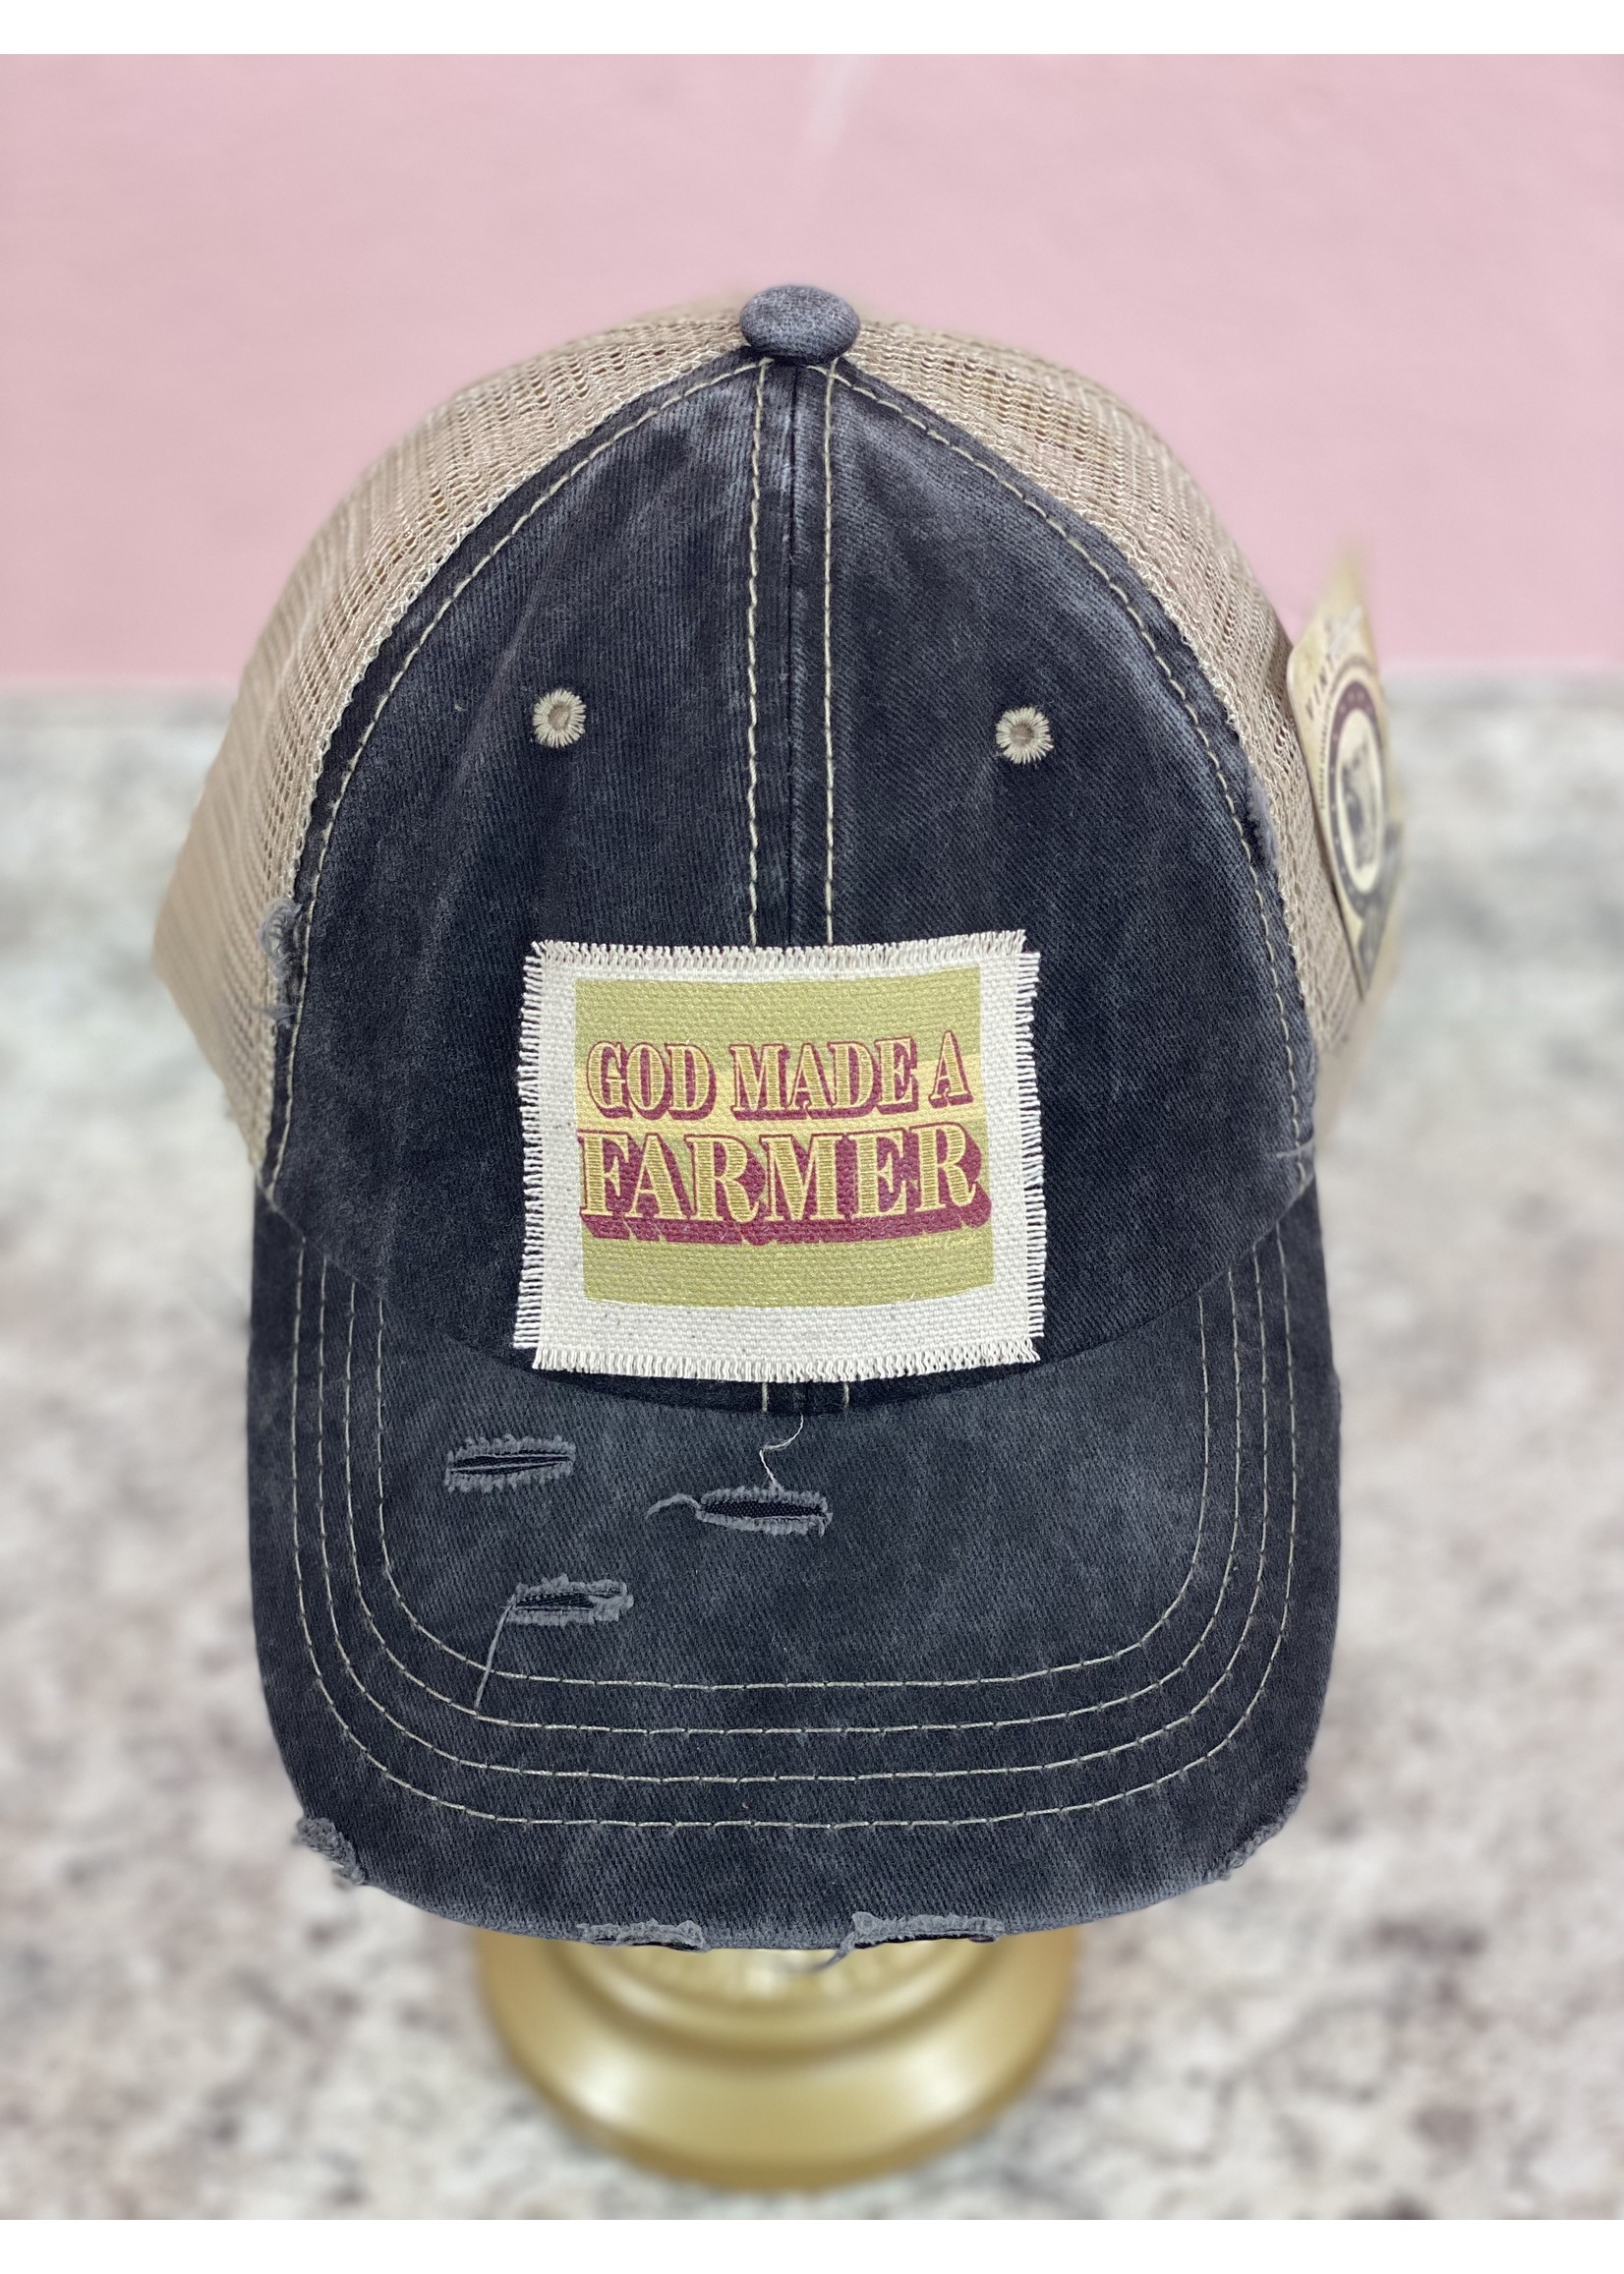 Wild Lucille Gold Made A Farmer Black Trucker Hat